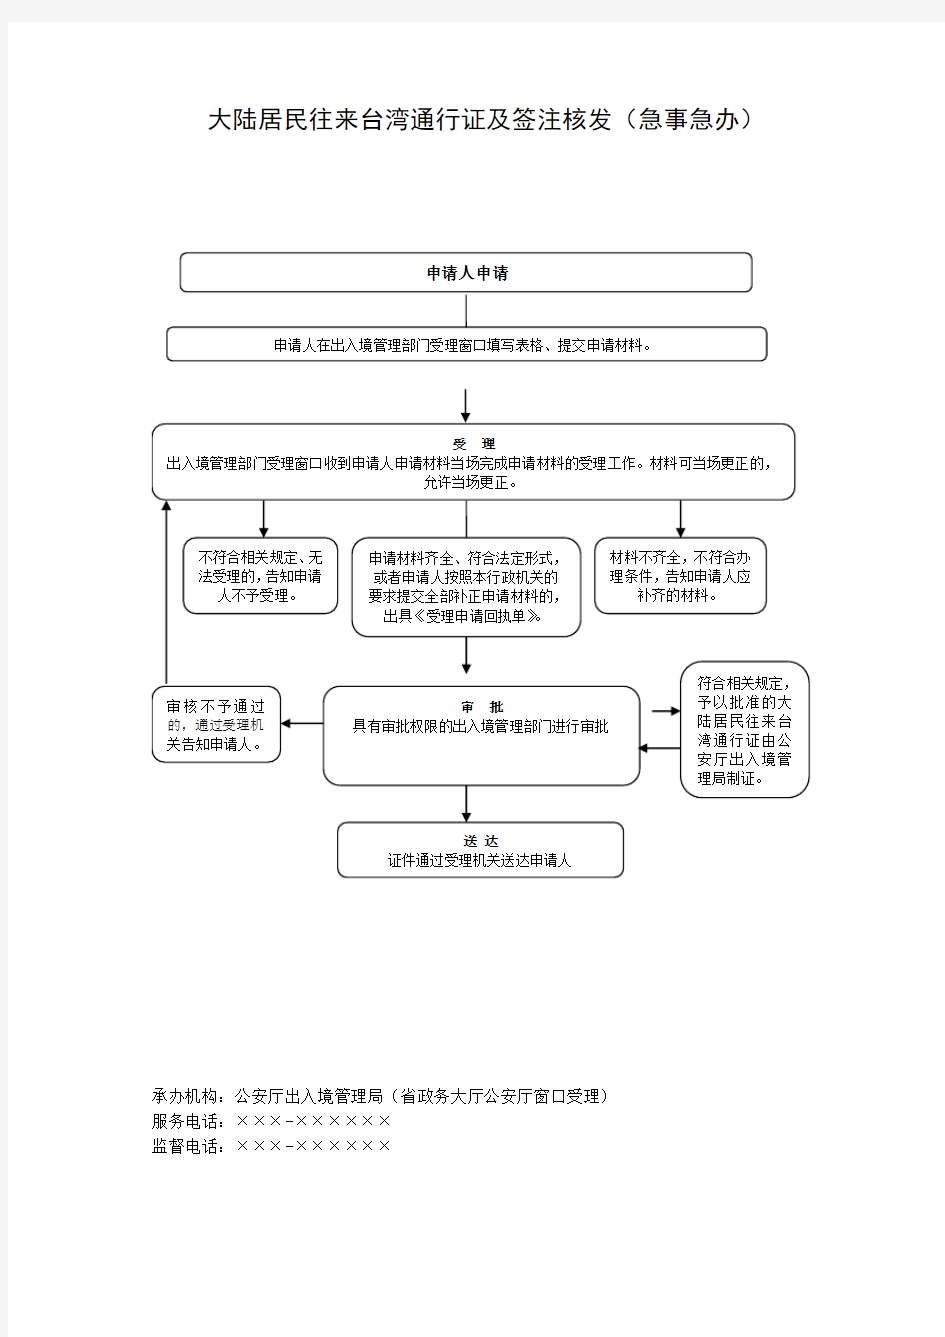 省级公安出入境管理机关大陆居民往来台湾通行证及签注核发(急事急办)流程图